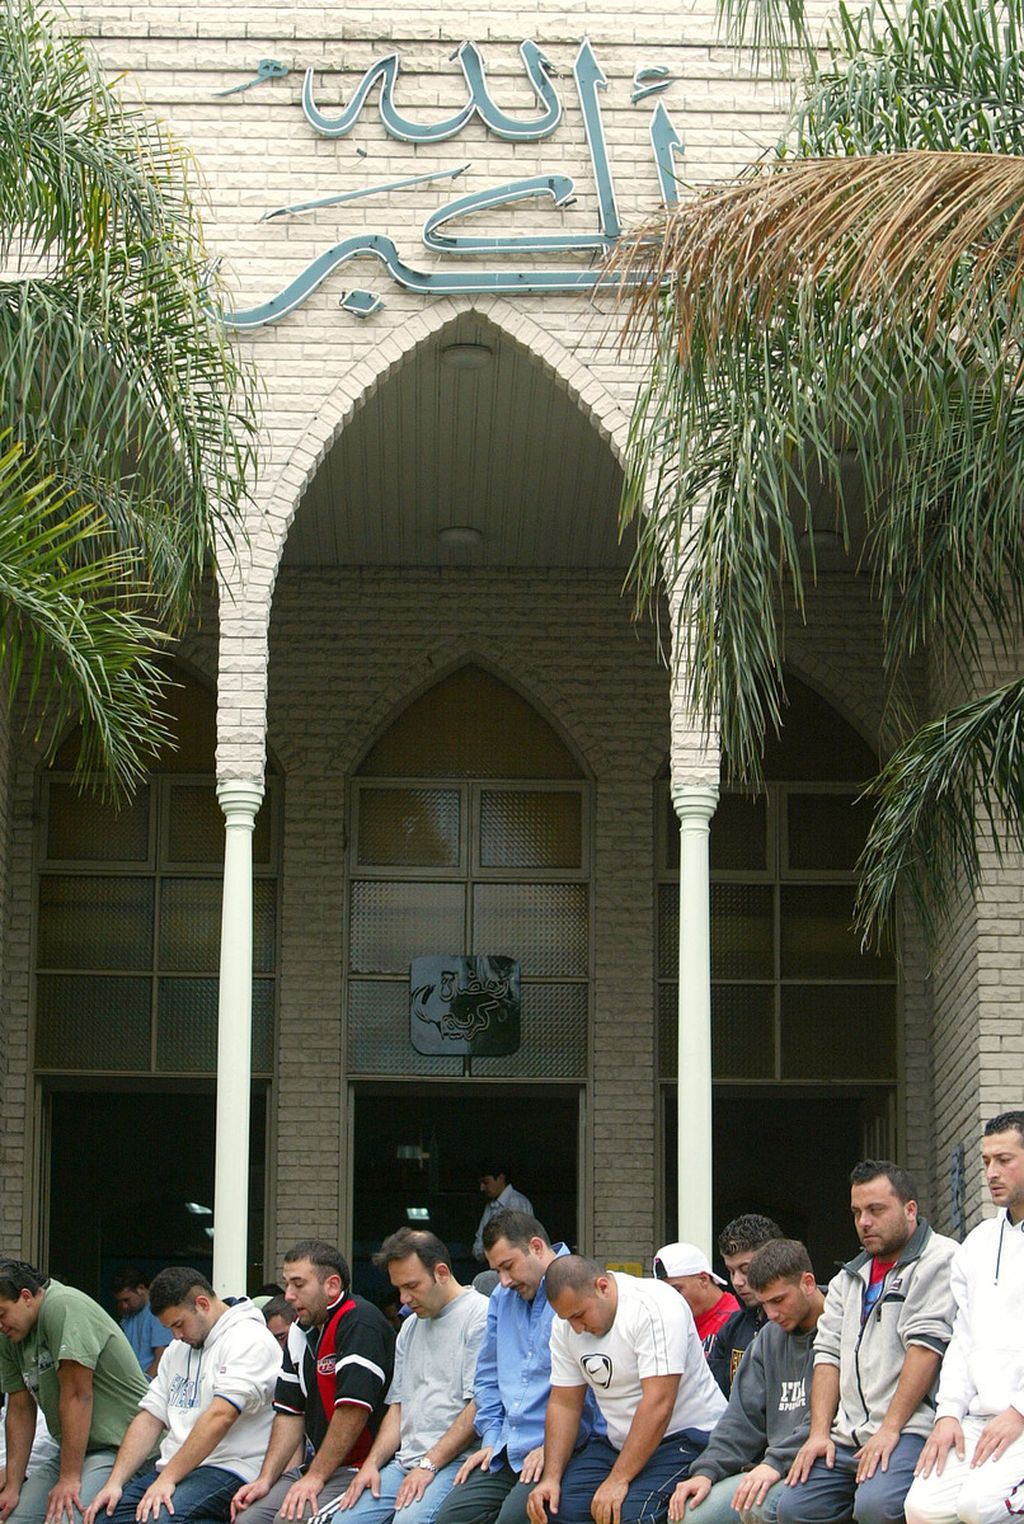 Jemaah berkumpul untuk shalat di luar masjid pada hari Jumat kedua bulan suci Ramadhan, di Lakemba, pinggiran barat Sydney, Australia, Jumat 22 Oktober 2004. 